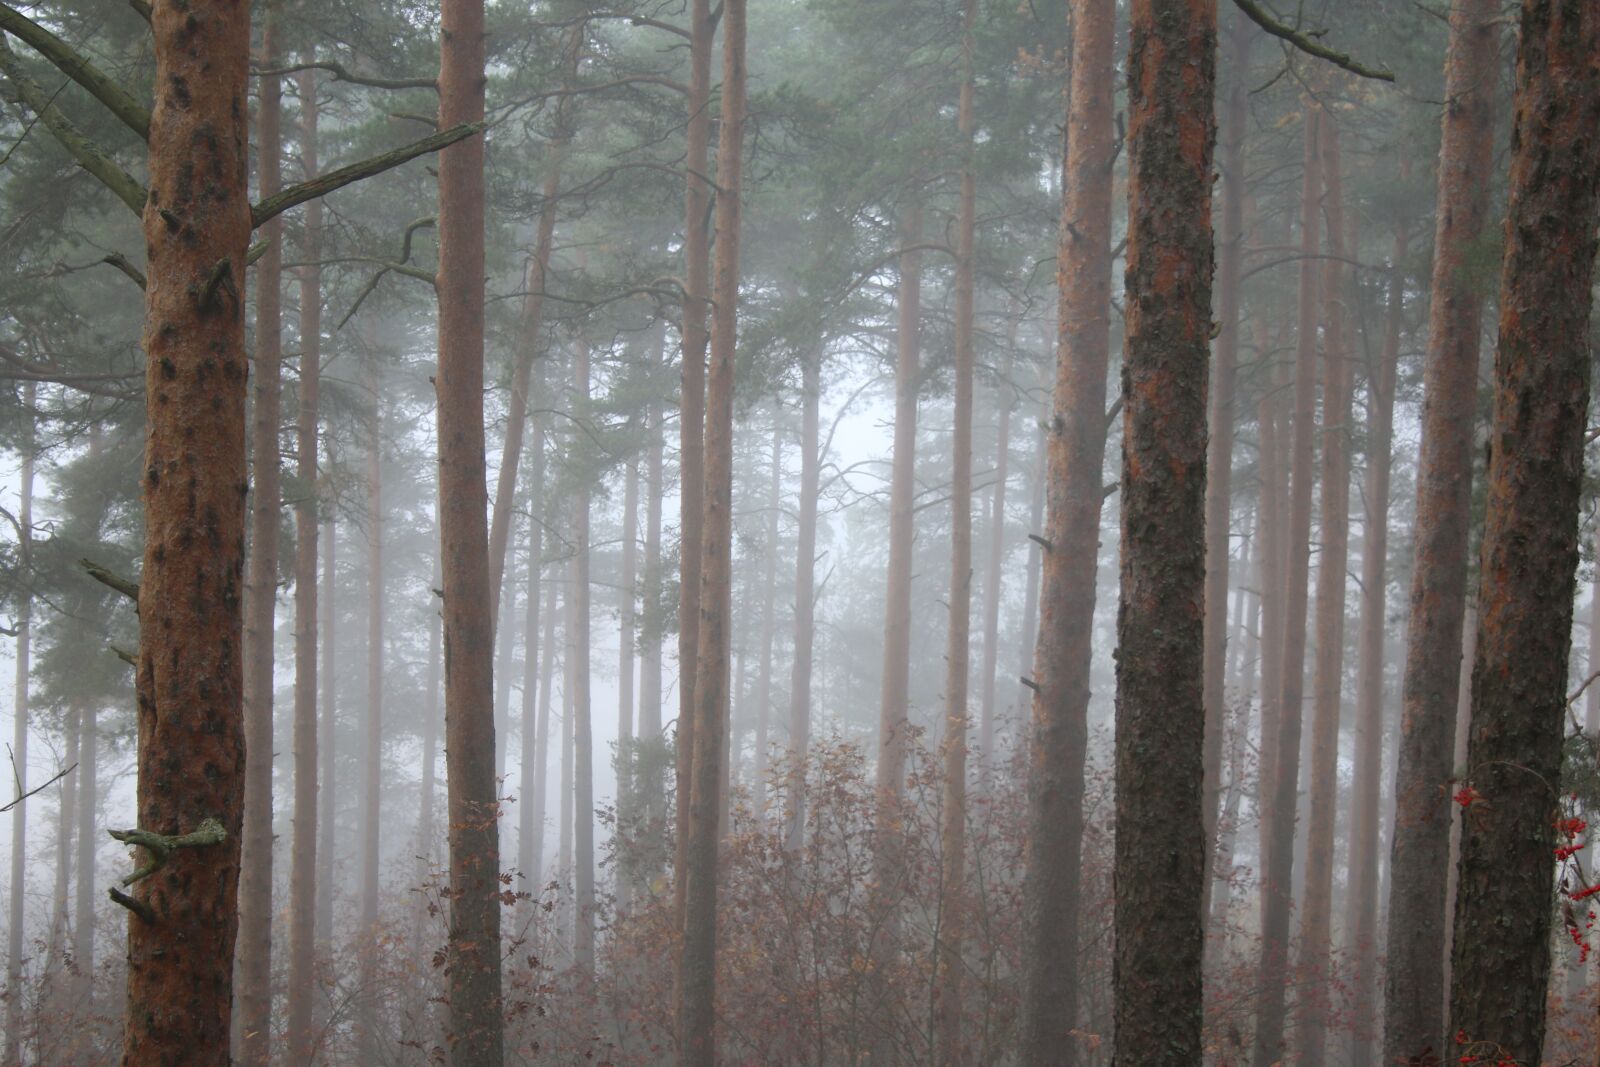 Canon EOS 70D sample photo. Fog, mist, forest photography